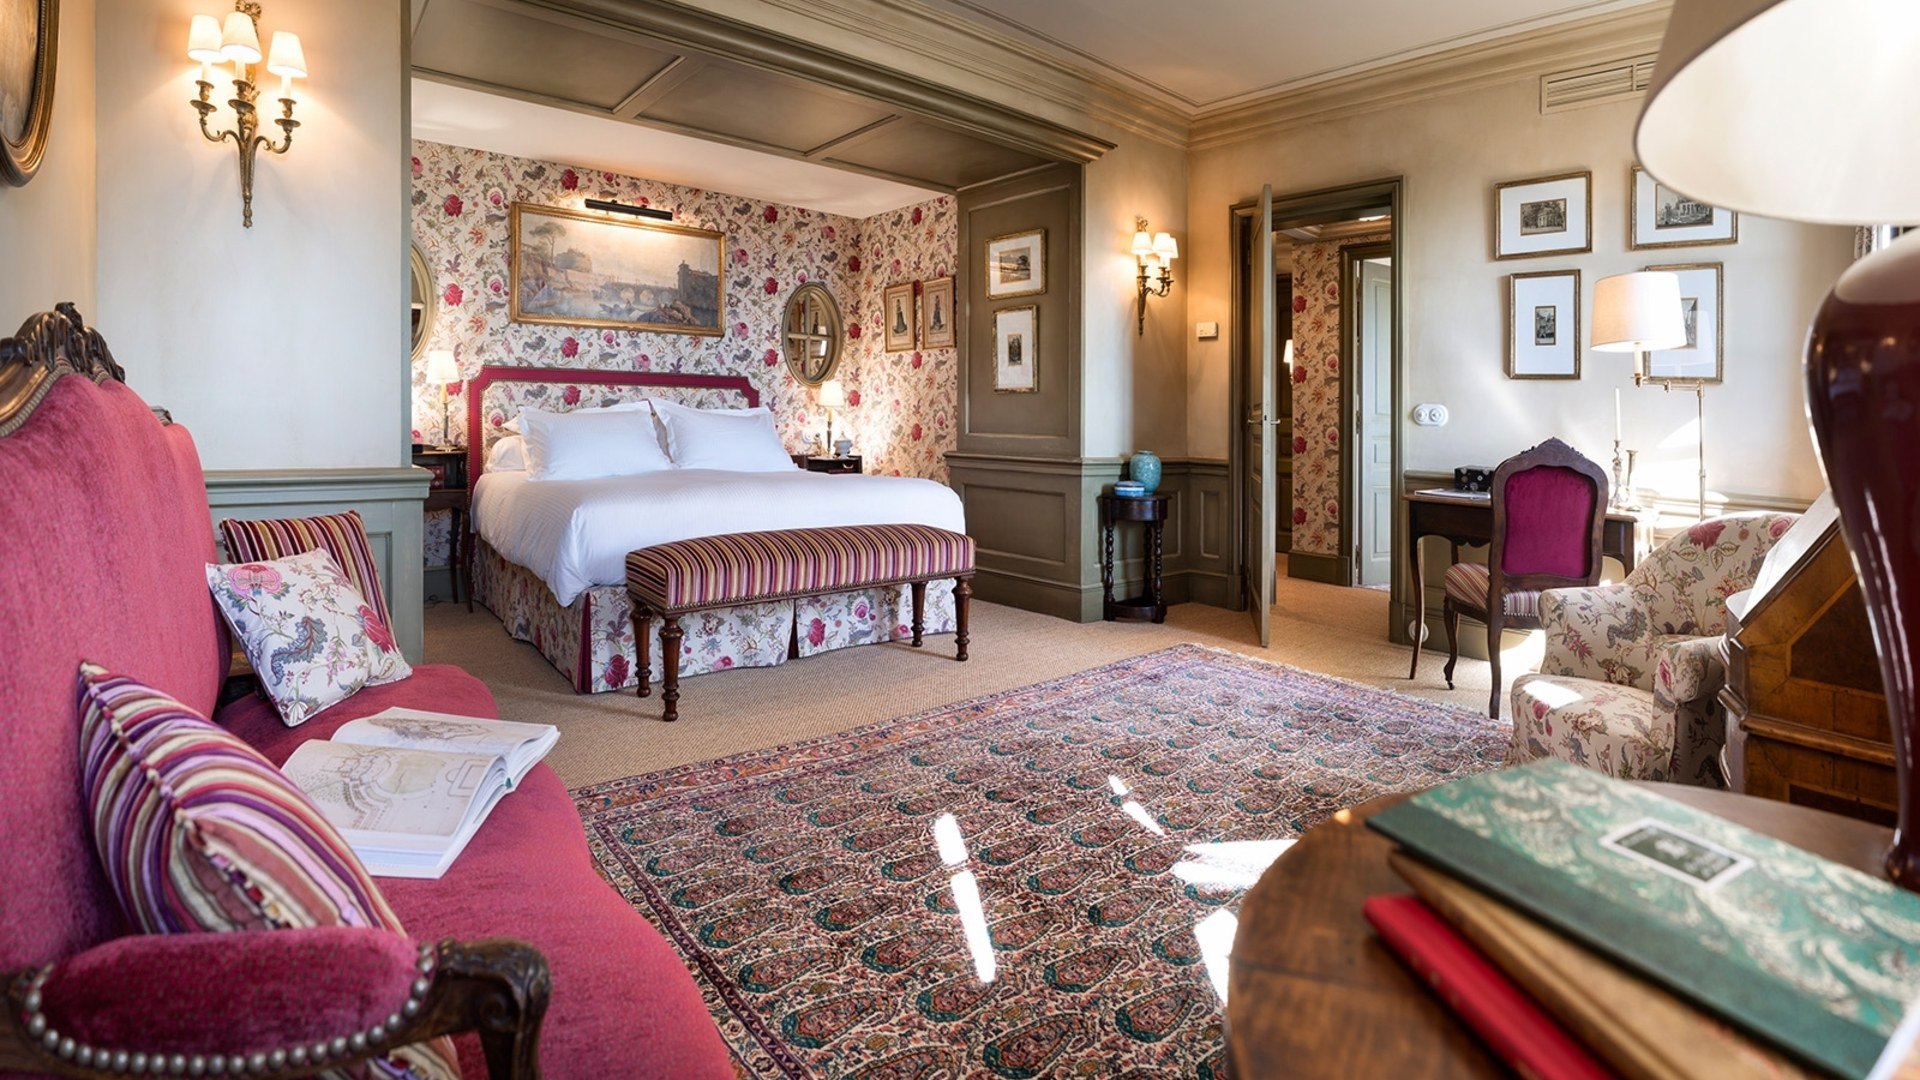 Прованс номер. Отель в стиле Прованс во Франции. La Bastide de Gordes Hotel & Spa, Прованс, Франция. Спальня во французском стиле. Интерьеры отелей в стиле Прованс.